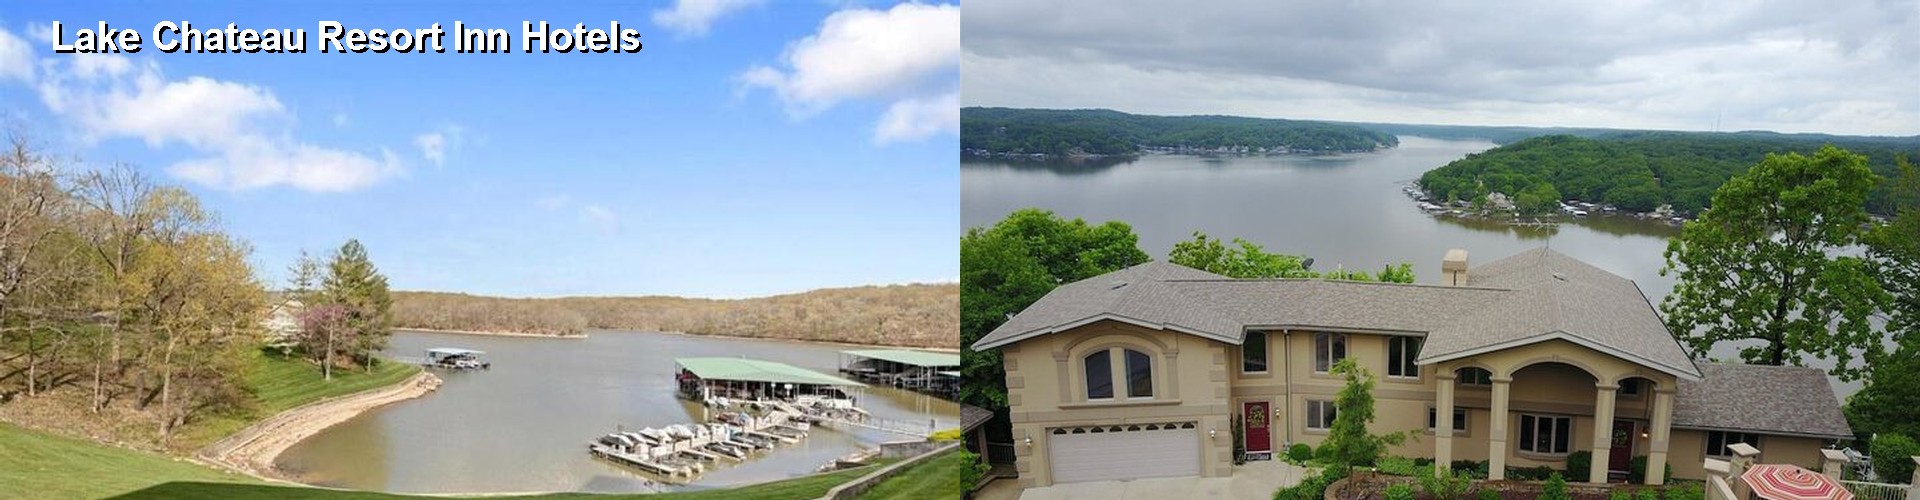 4 Best Hotels near Lake Chateau Resort Inn